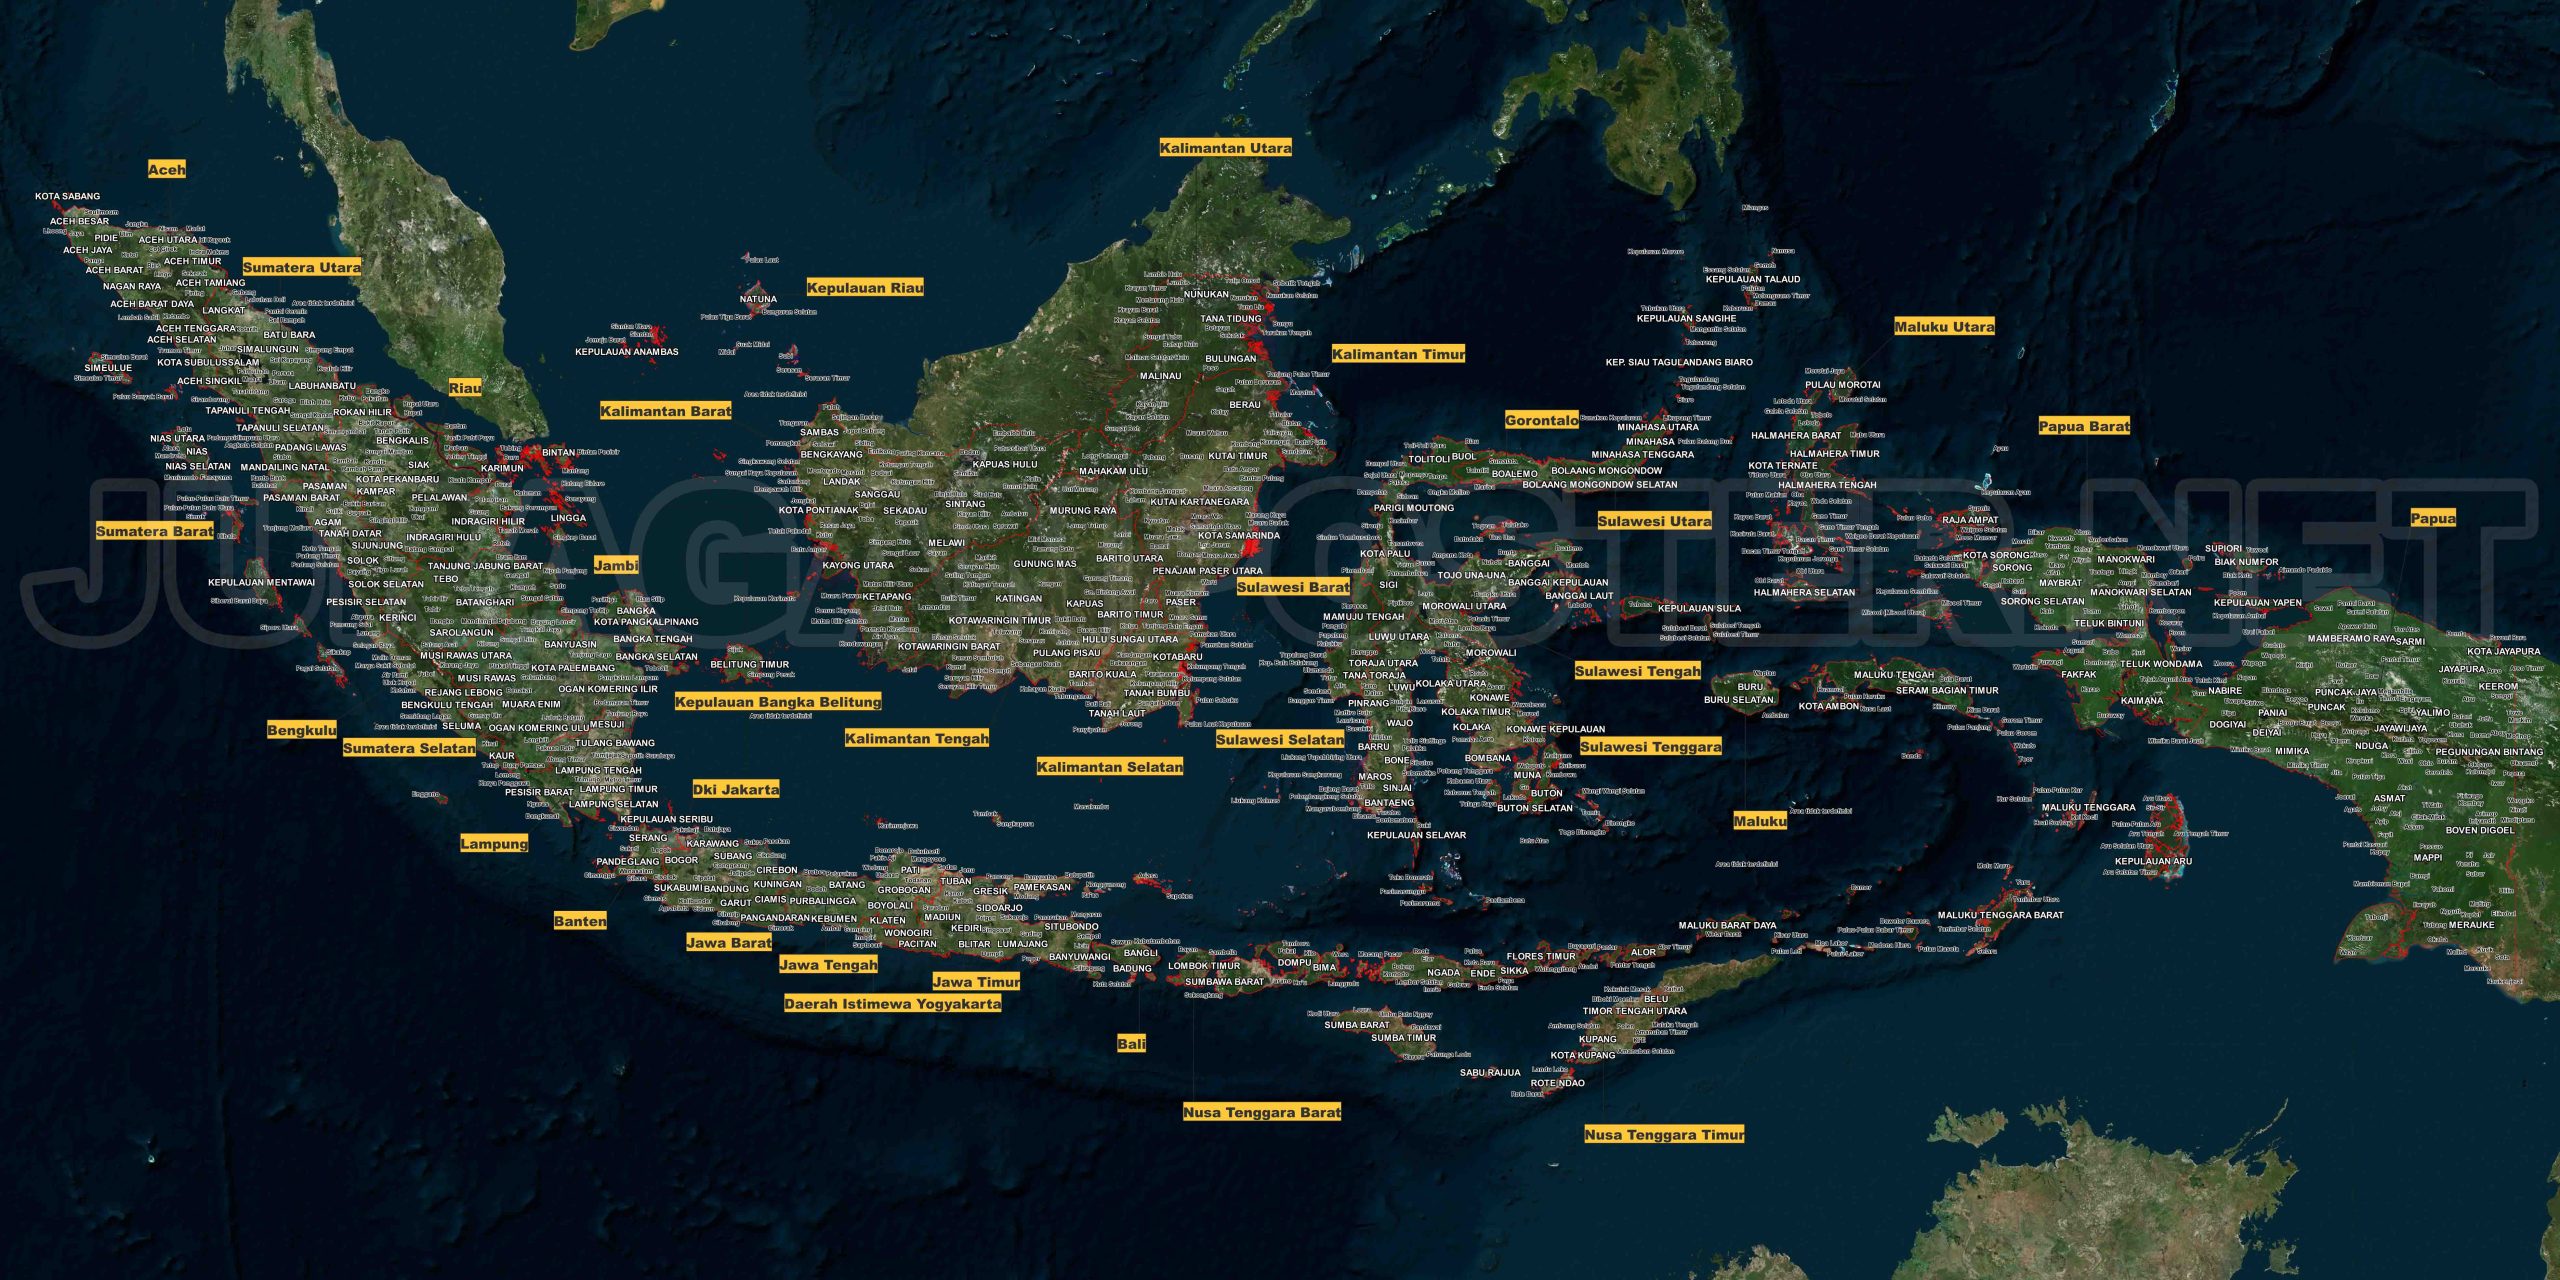 Peta Indonesia dengan Latar Belakang Hitam: Menonjolkan Detail